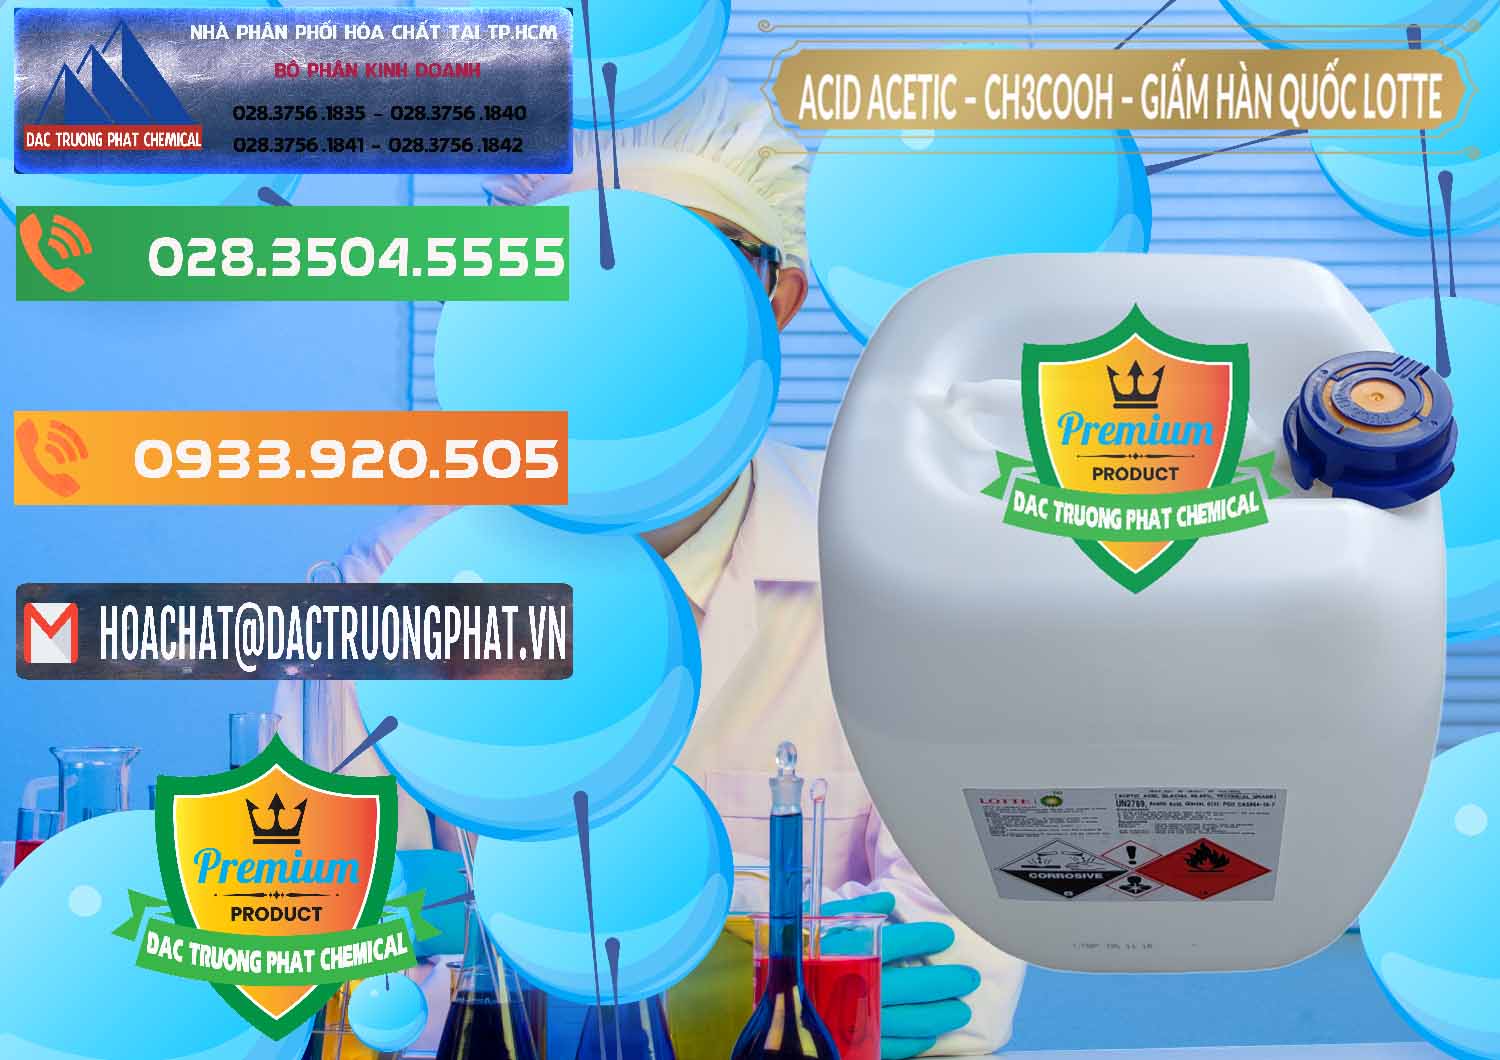 Đơn vị chuyên bán ( cung ứng ) Acetic Acid – Axit Acetic Hàn Quốc Lotte Korea - 0002 - Công ty phân phối ( cung cấp ) hóa chất tại TP.HCM - hoachatxulynuoc.com.vn